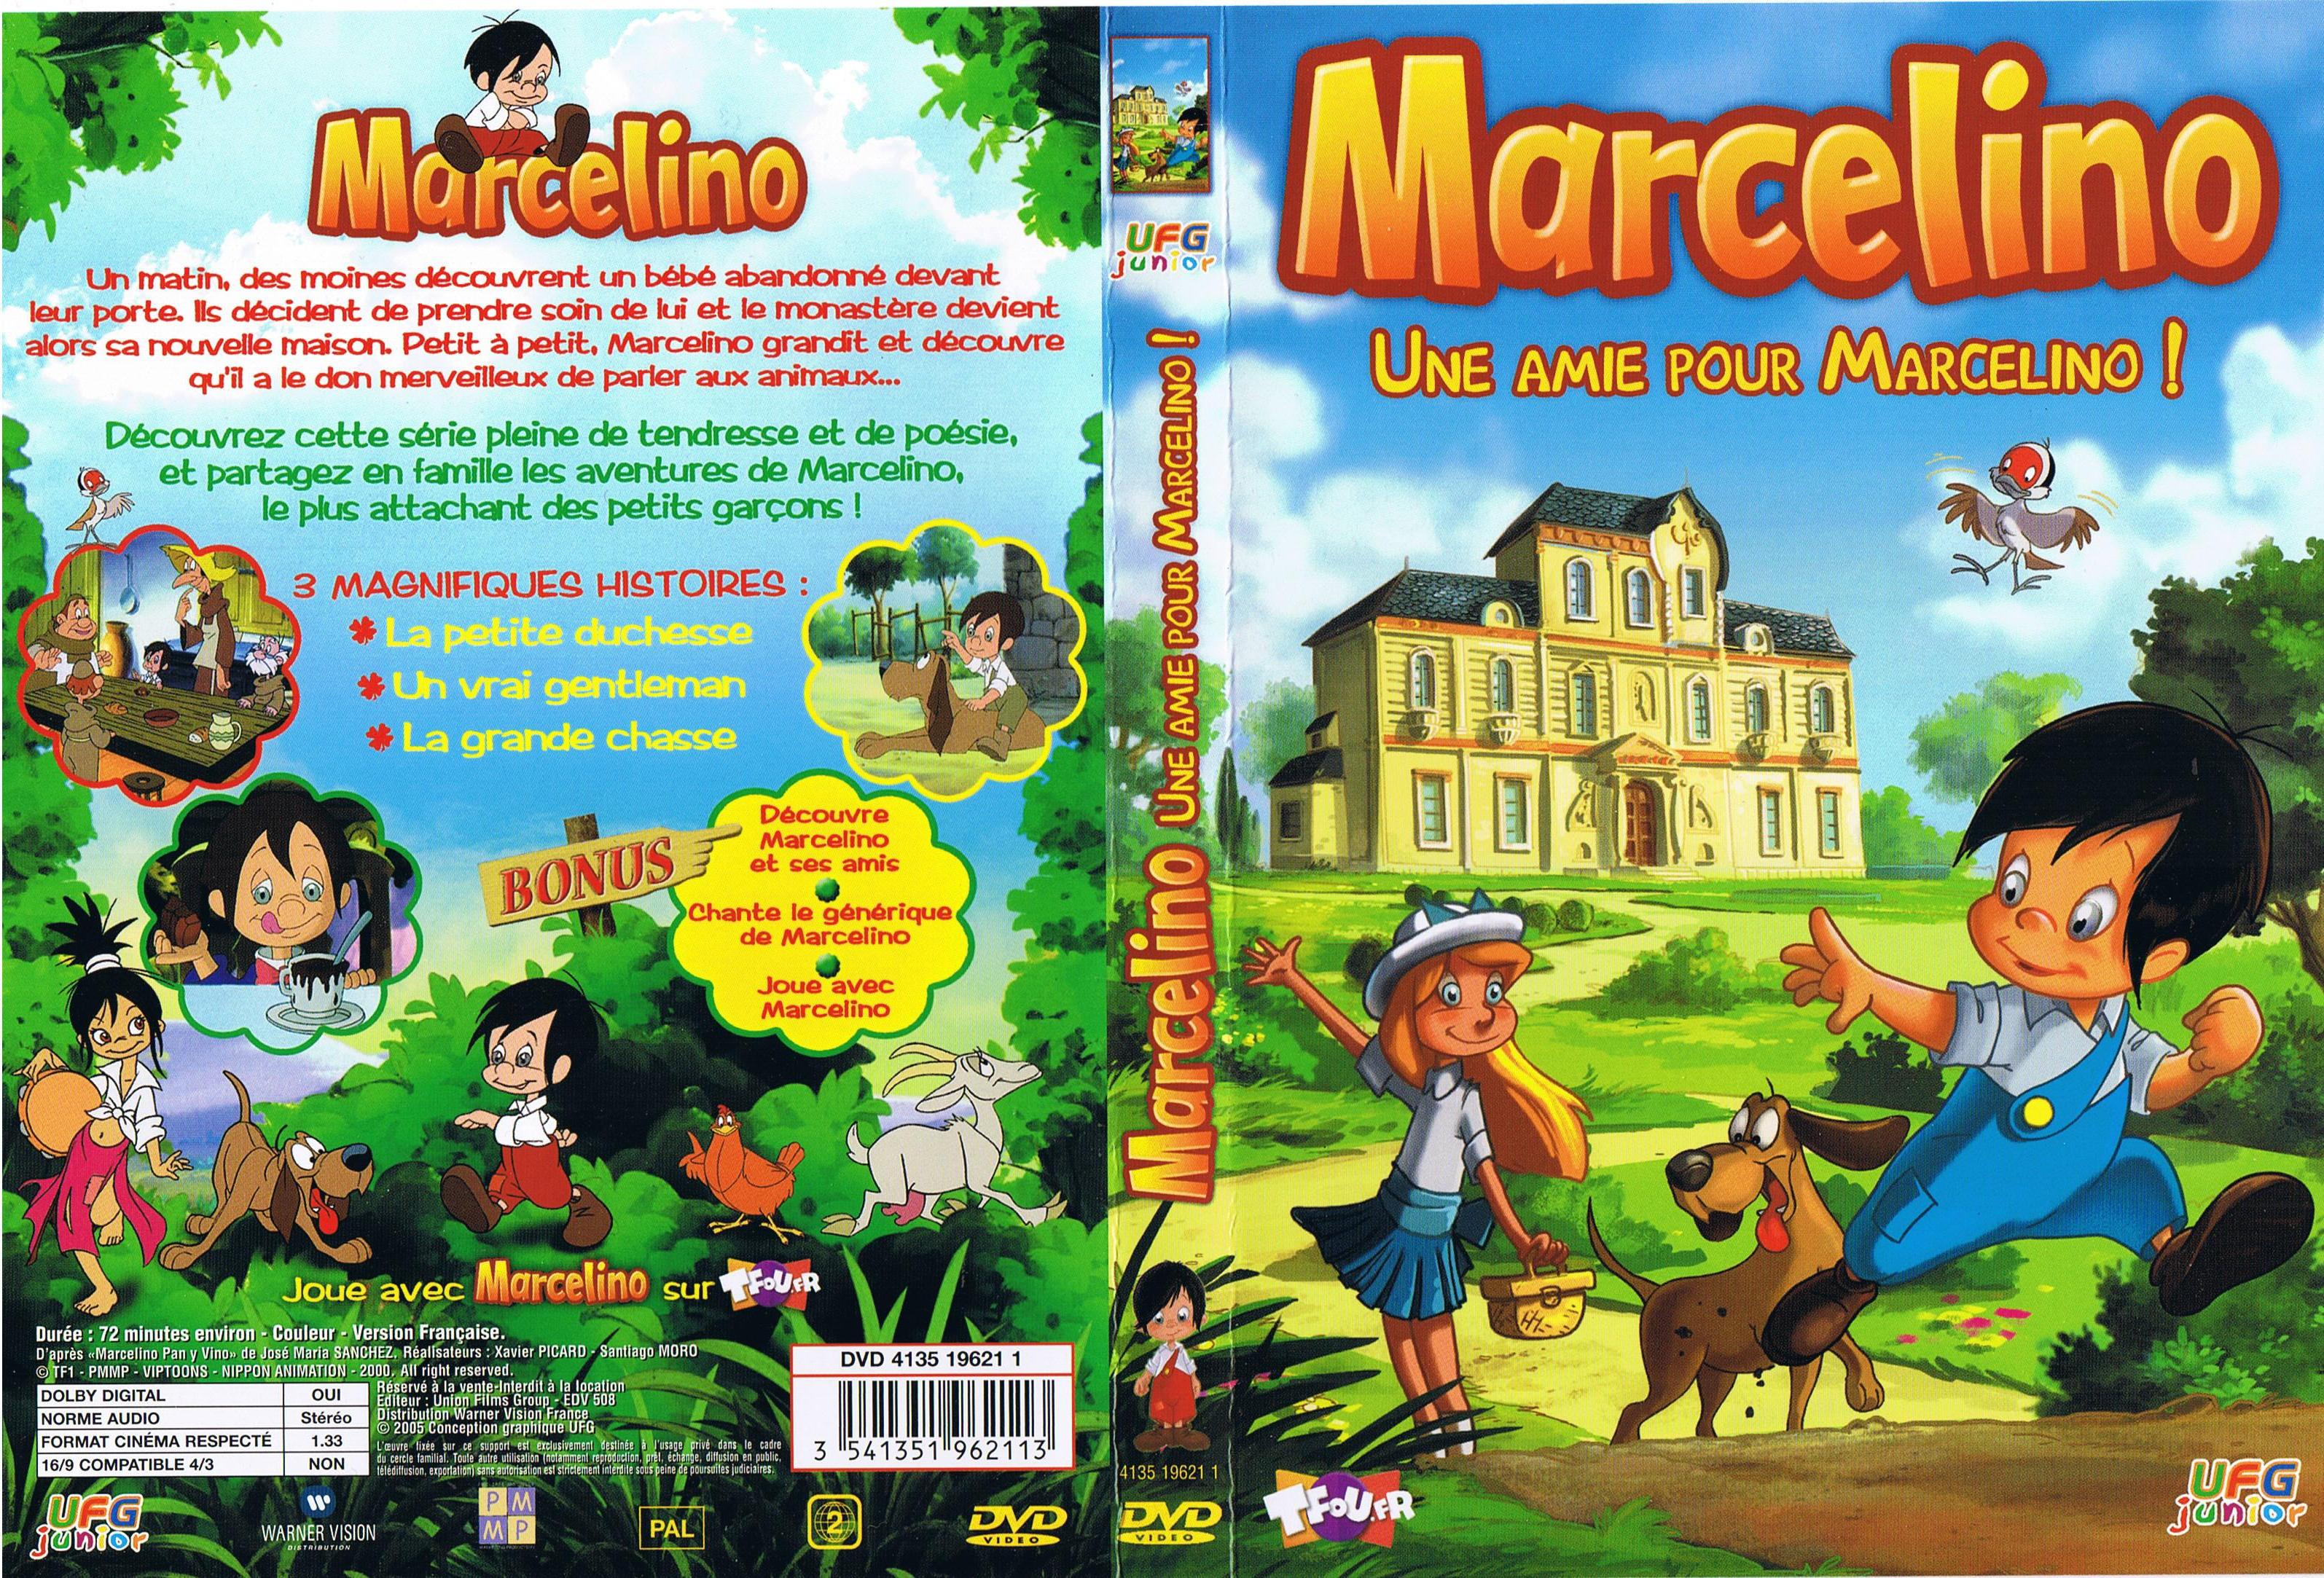 Jaquette DVD Marcelino - Une amie pour marcelino